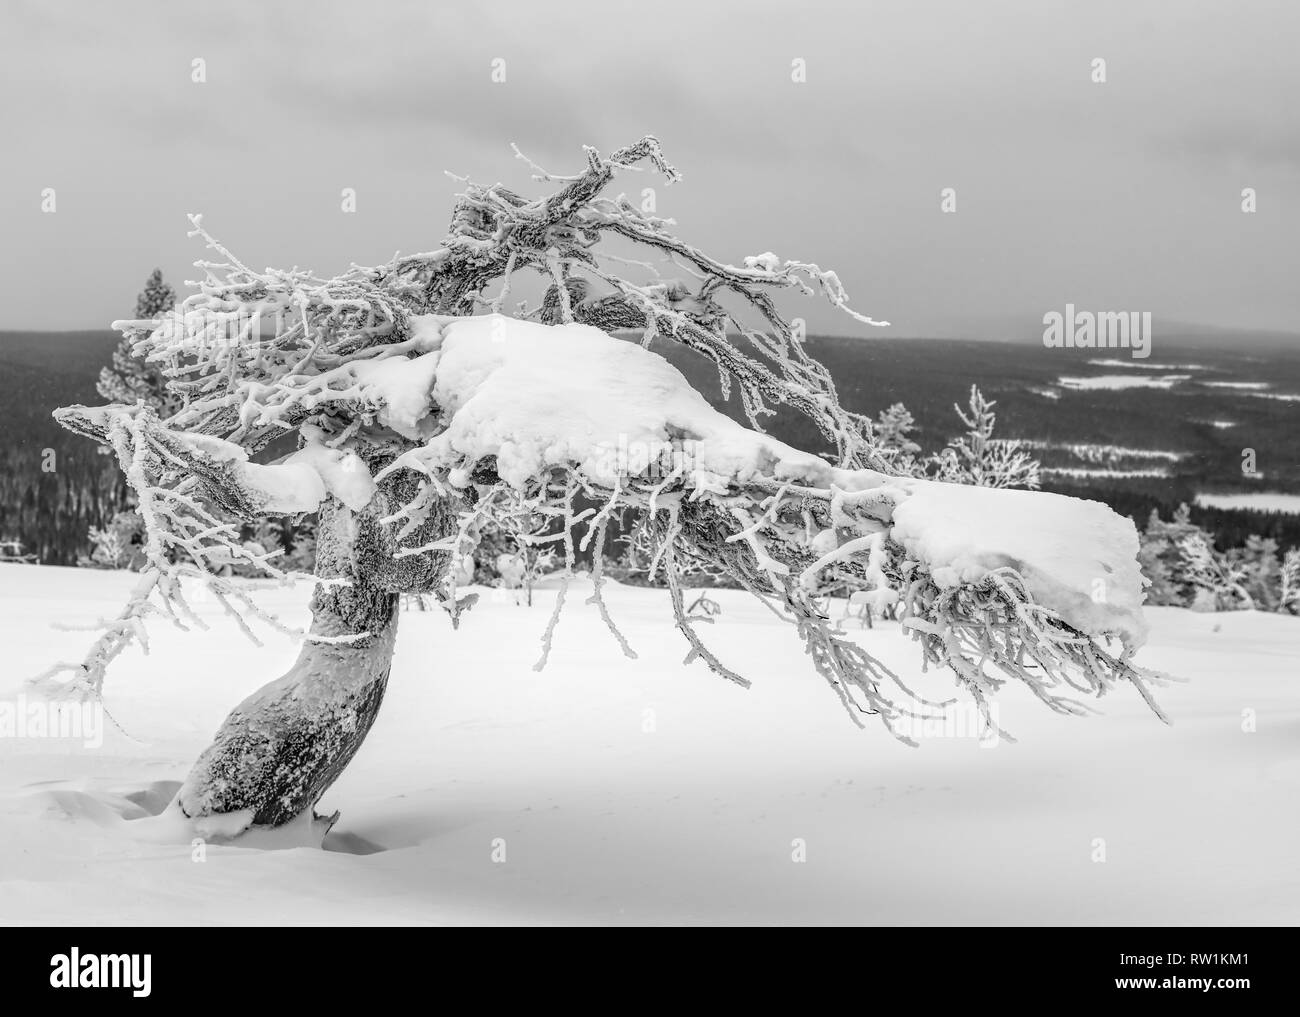 De neige et de verglas pin tordu sur le dessus d'une tombe dans la région de Laponie, Finlande le ciel couvert l'après-midi d'hiver spectaculaire Banque D'Images